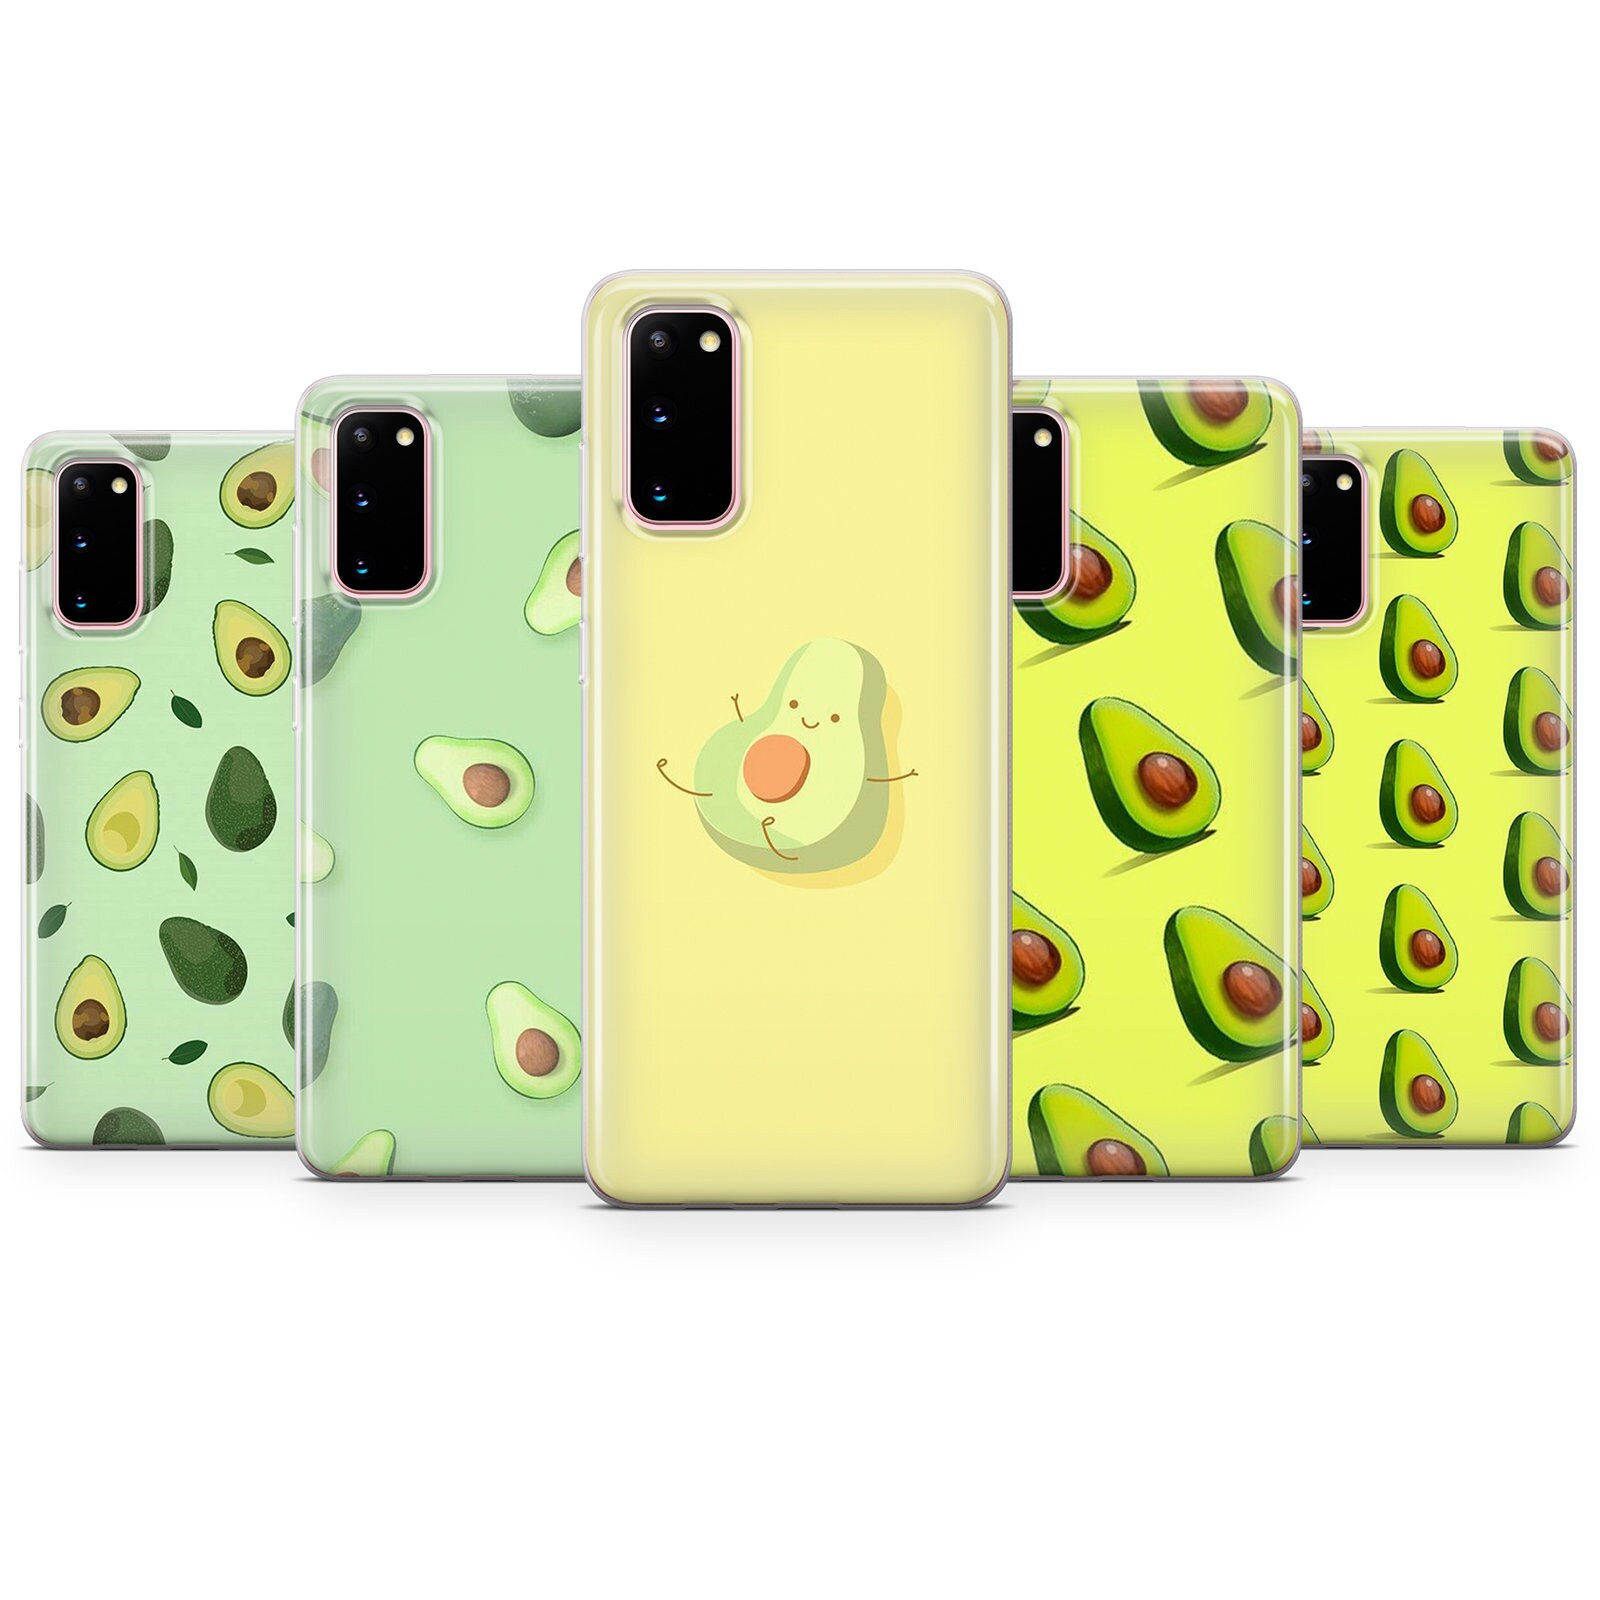 Funda de silicona líquida de aguacate verde compatible con iPhone 13 Mini,  funda de protección suave a prueba de golpes, patrón único de frutas kawaii